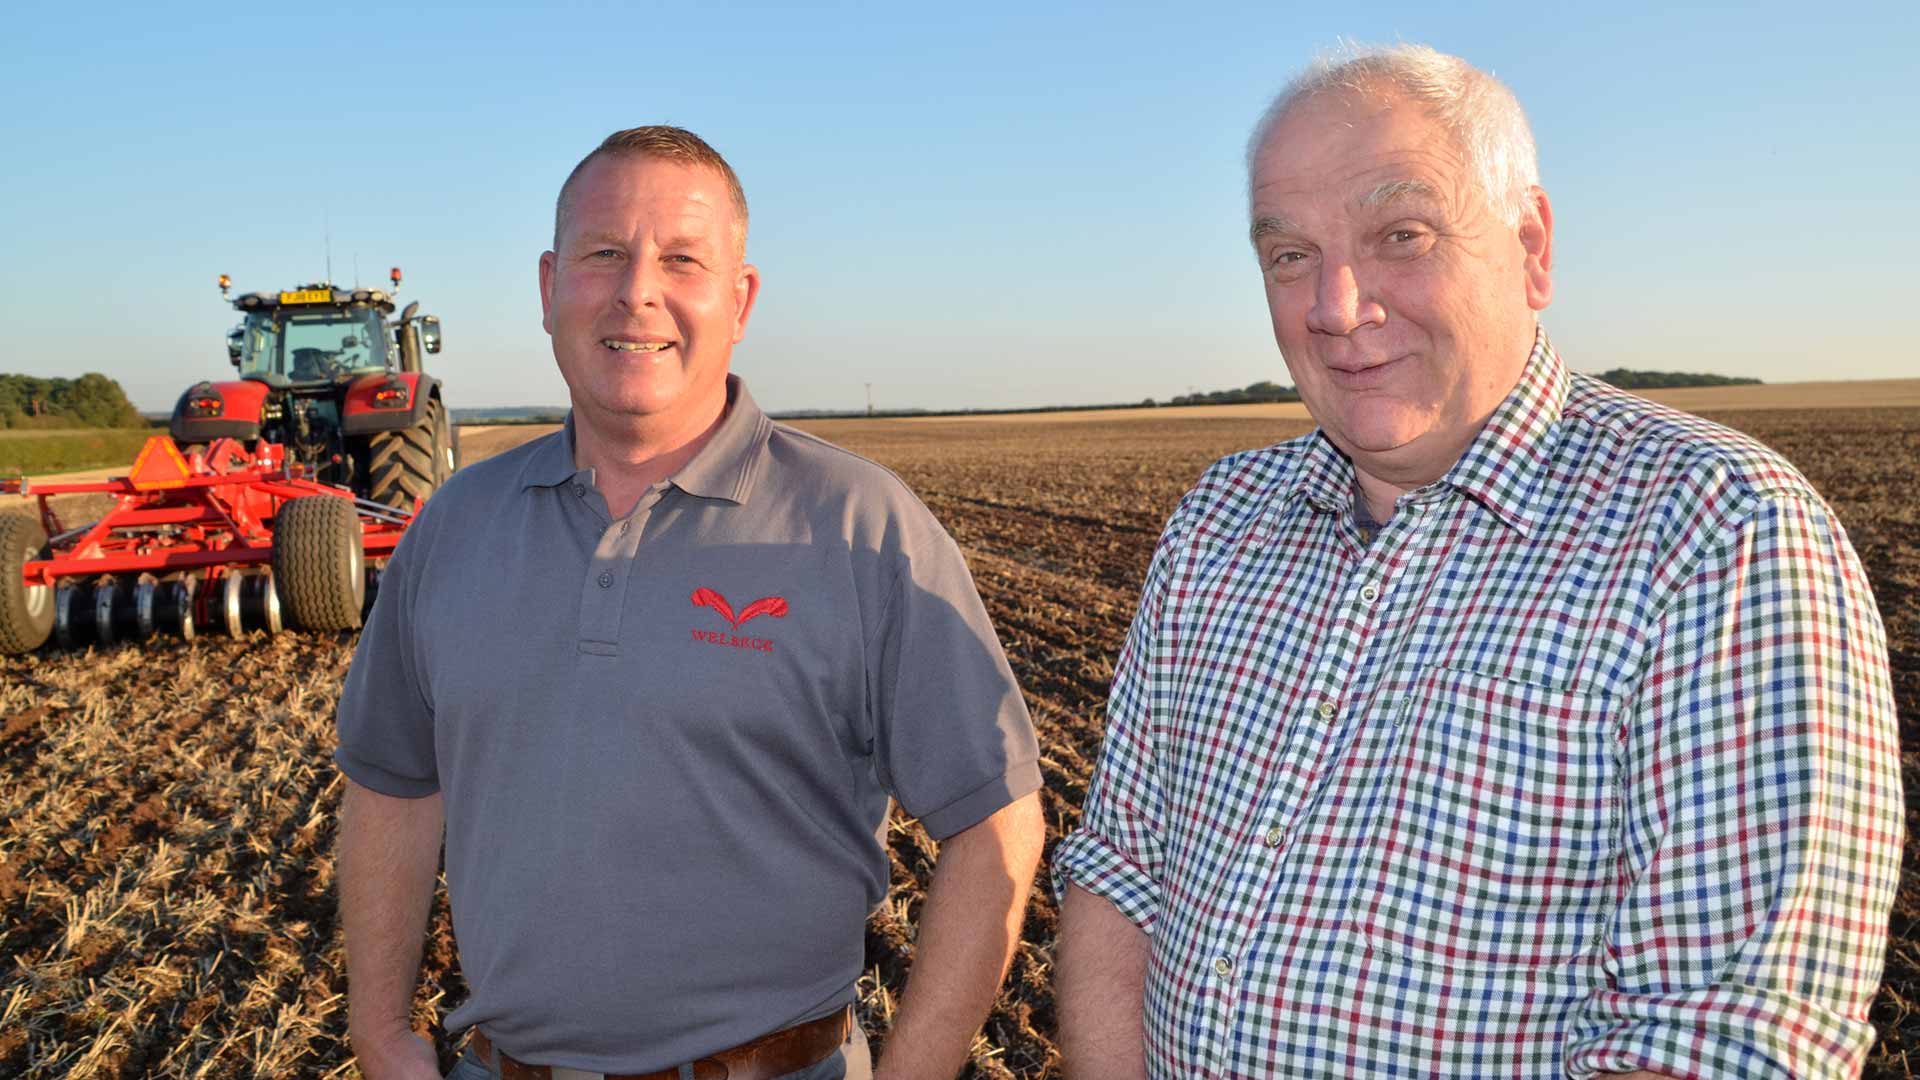 Betriebsleiter Ray Beck und Traktorfahrer Mark Newton von der Welbeck Farming Company in England.